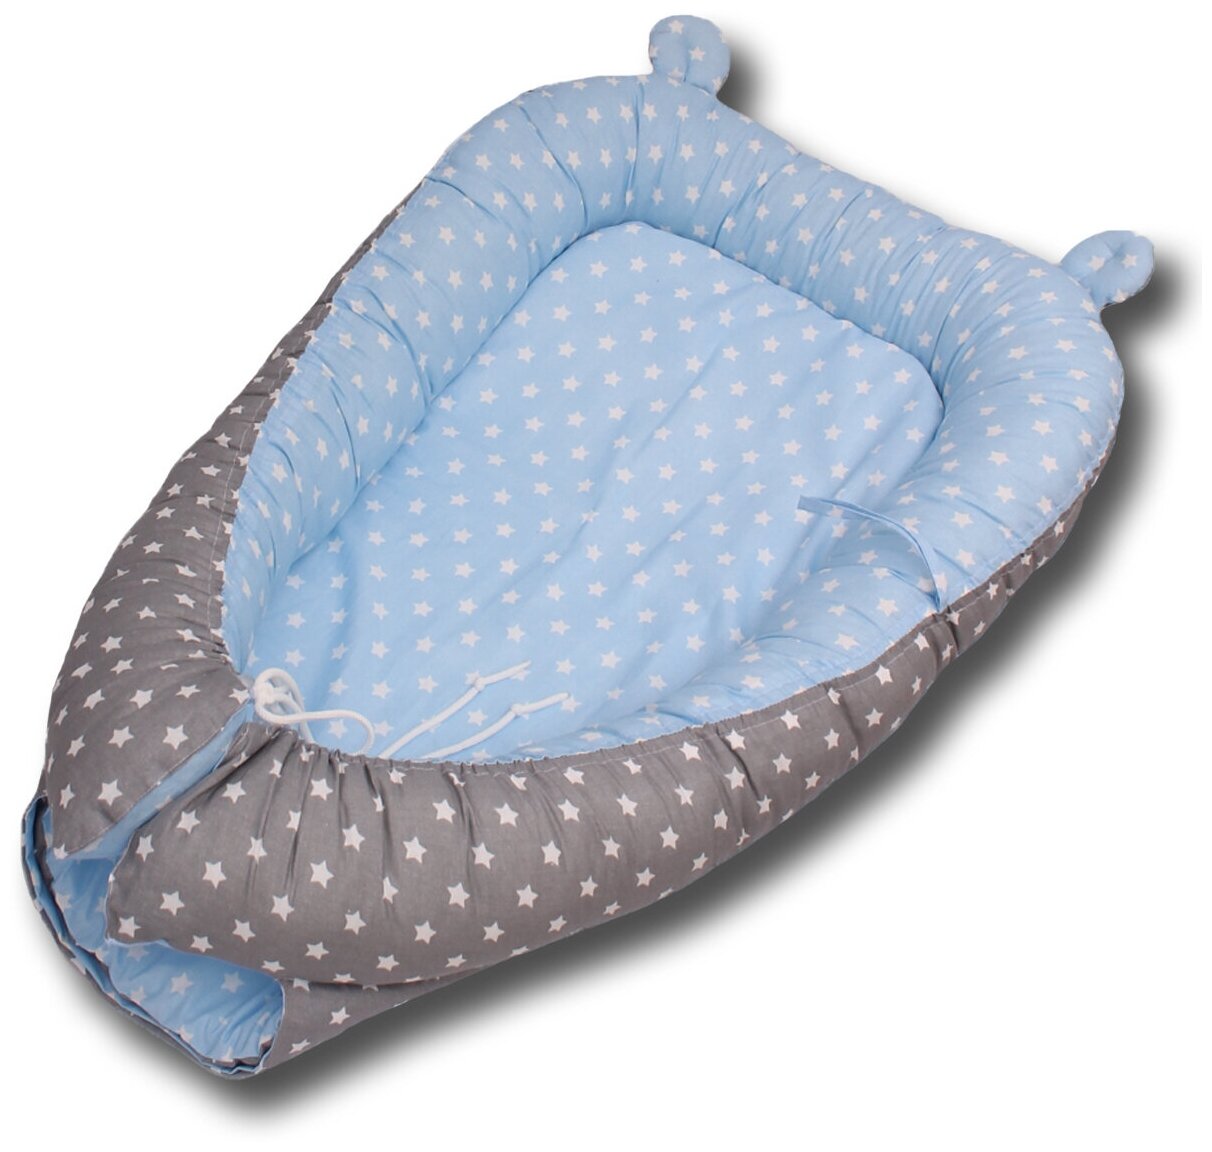 Гнездышко-кокон для новорожденных Body Pillow, расцветка "Звезды комби серо-голубые"